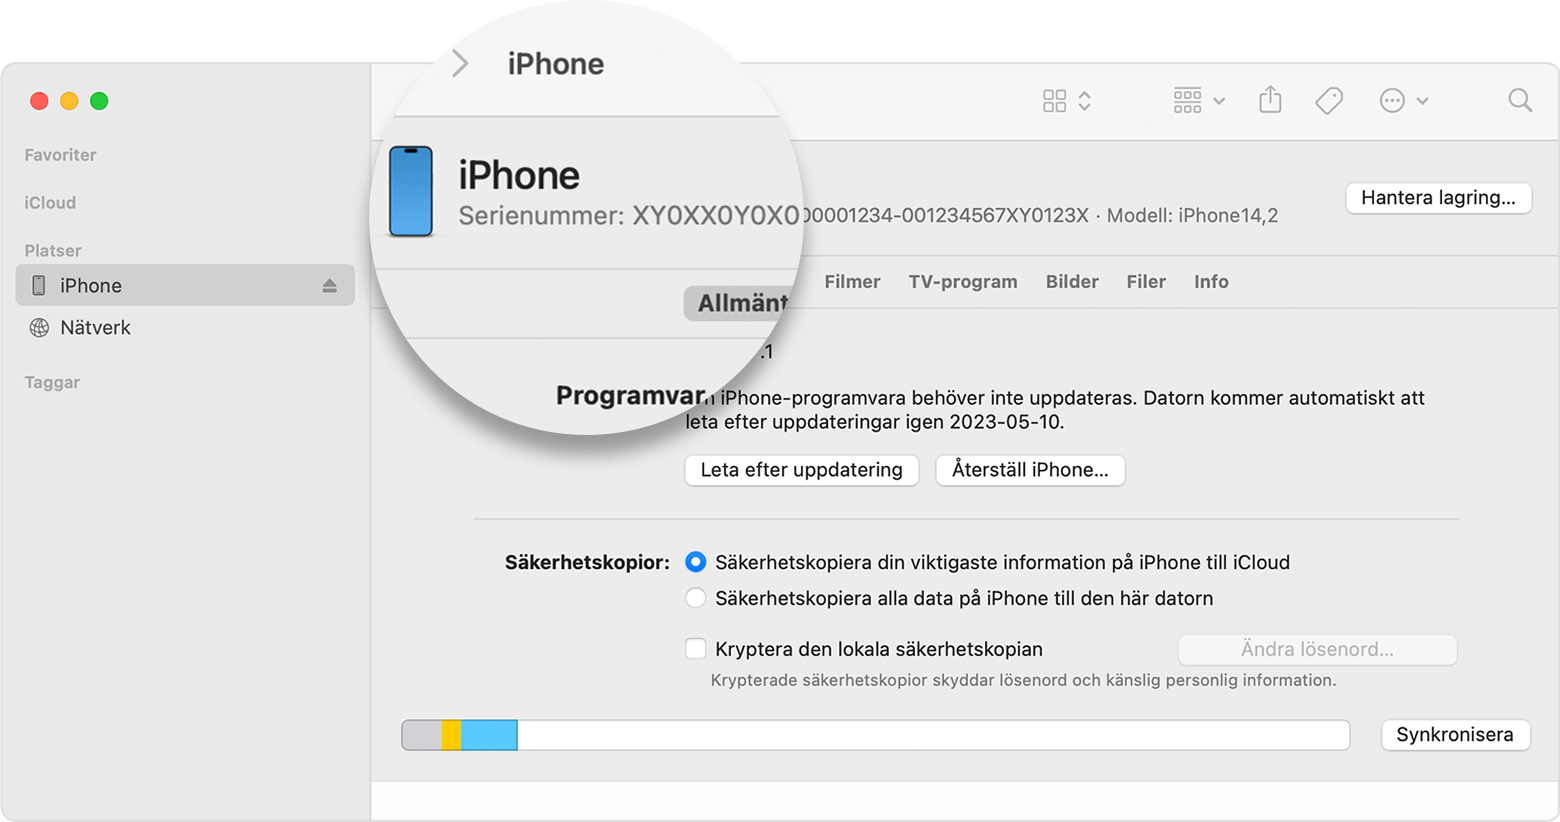 Skärmavbild av Finder-fönstret som visar iPhone-enhetens serienummer